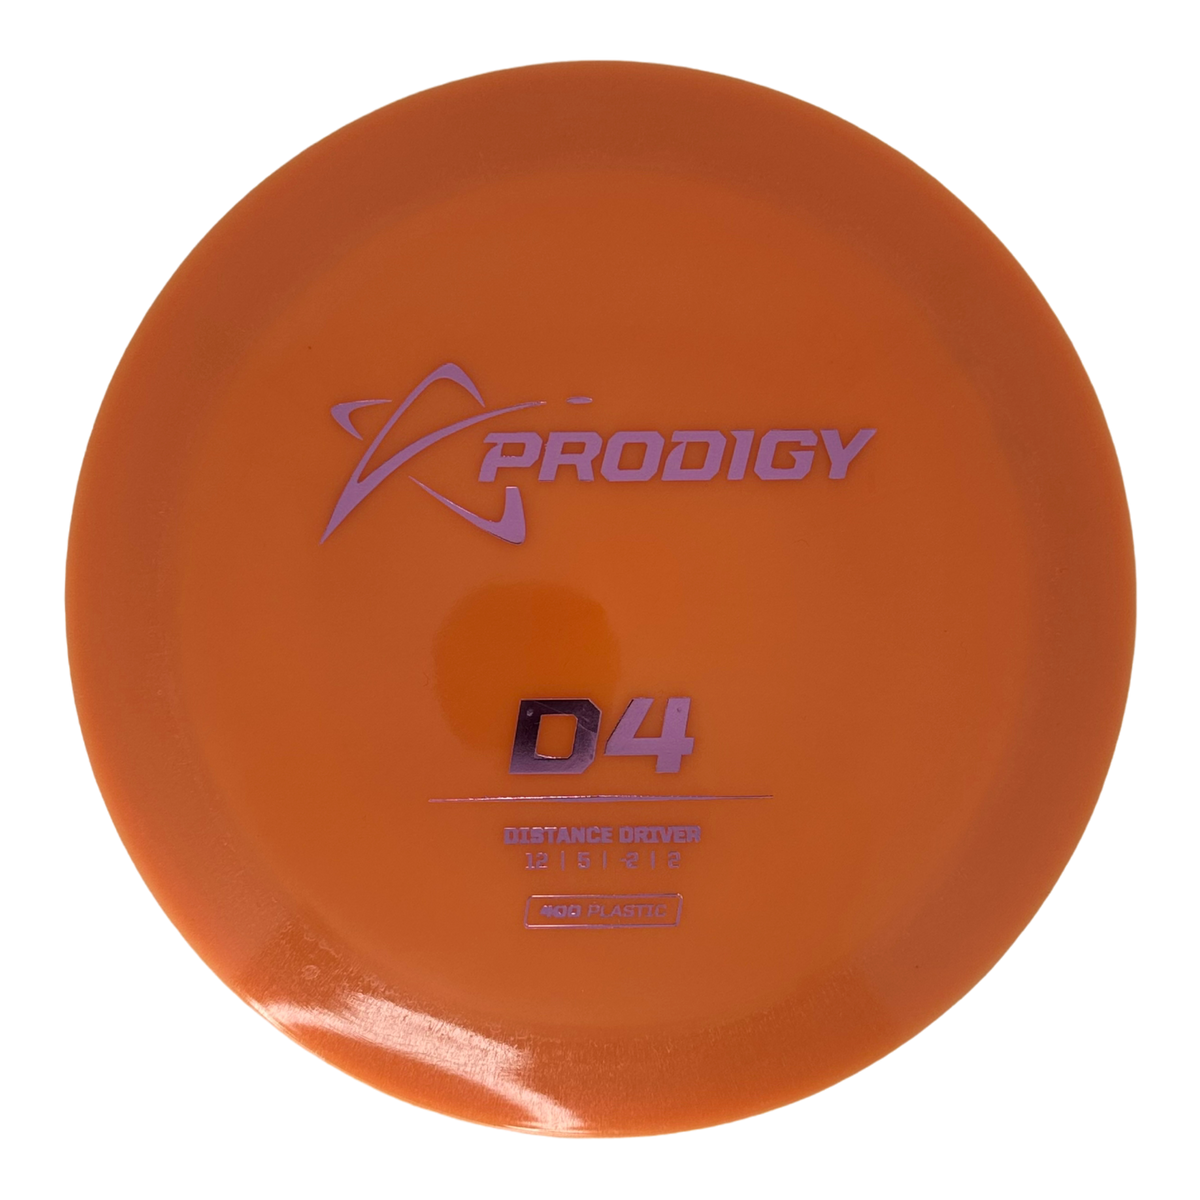 Prodigy 400 D4